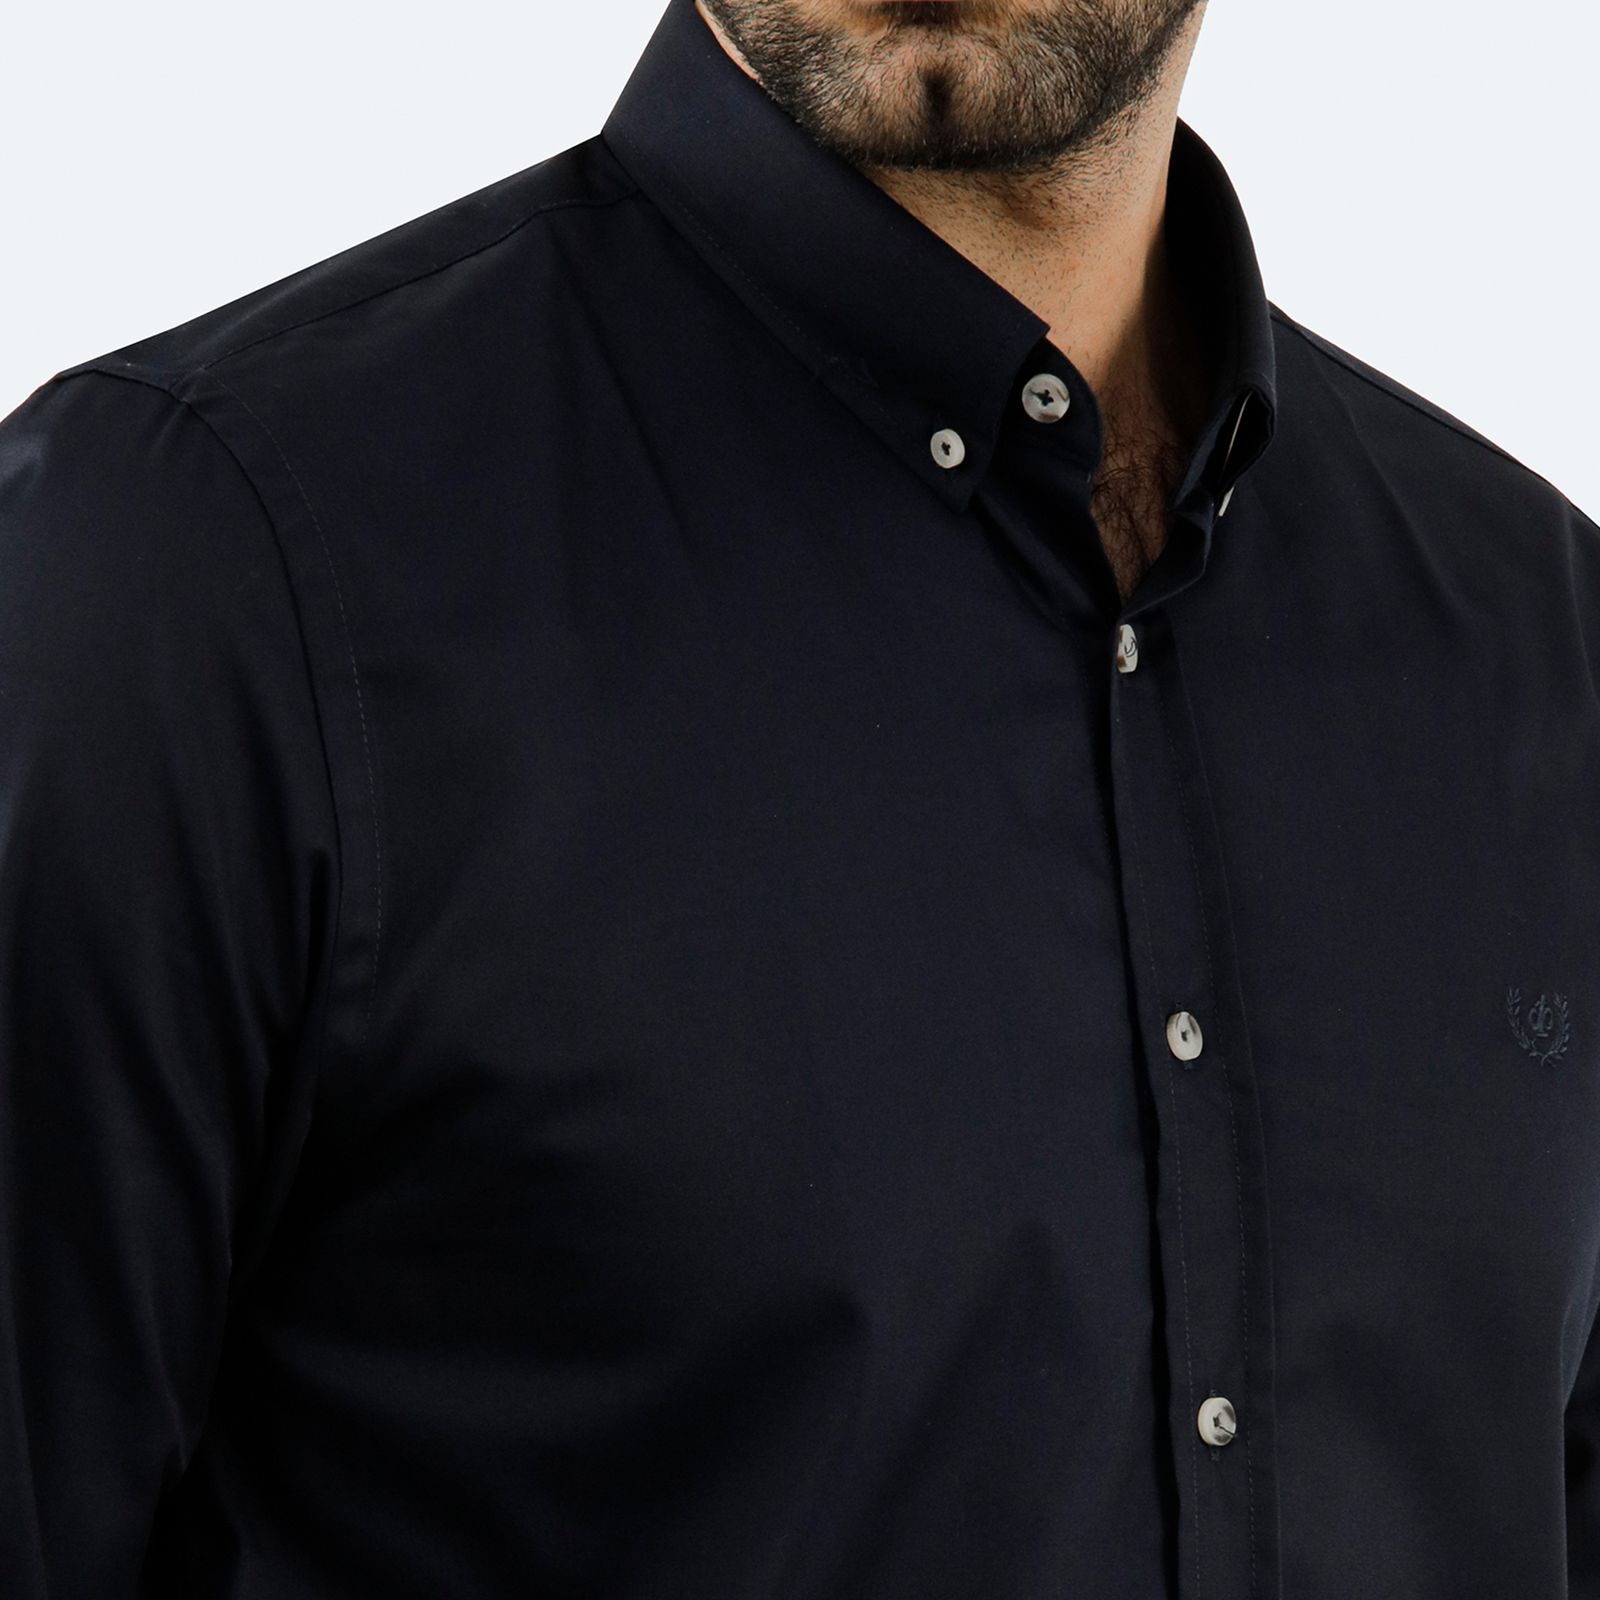 پیراهن آستین بلند مردانه پاتن جامه مدل 102721020259539 رنگ سورمه ای -  - 5